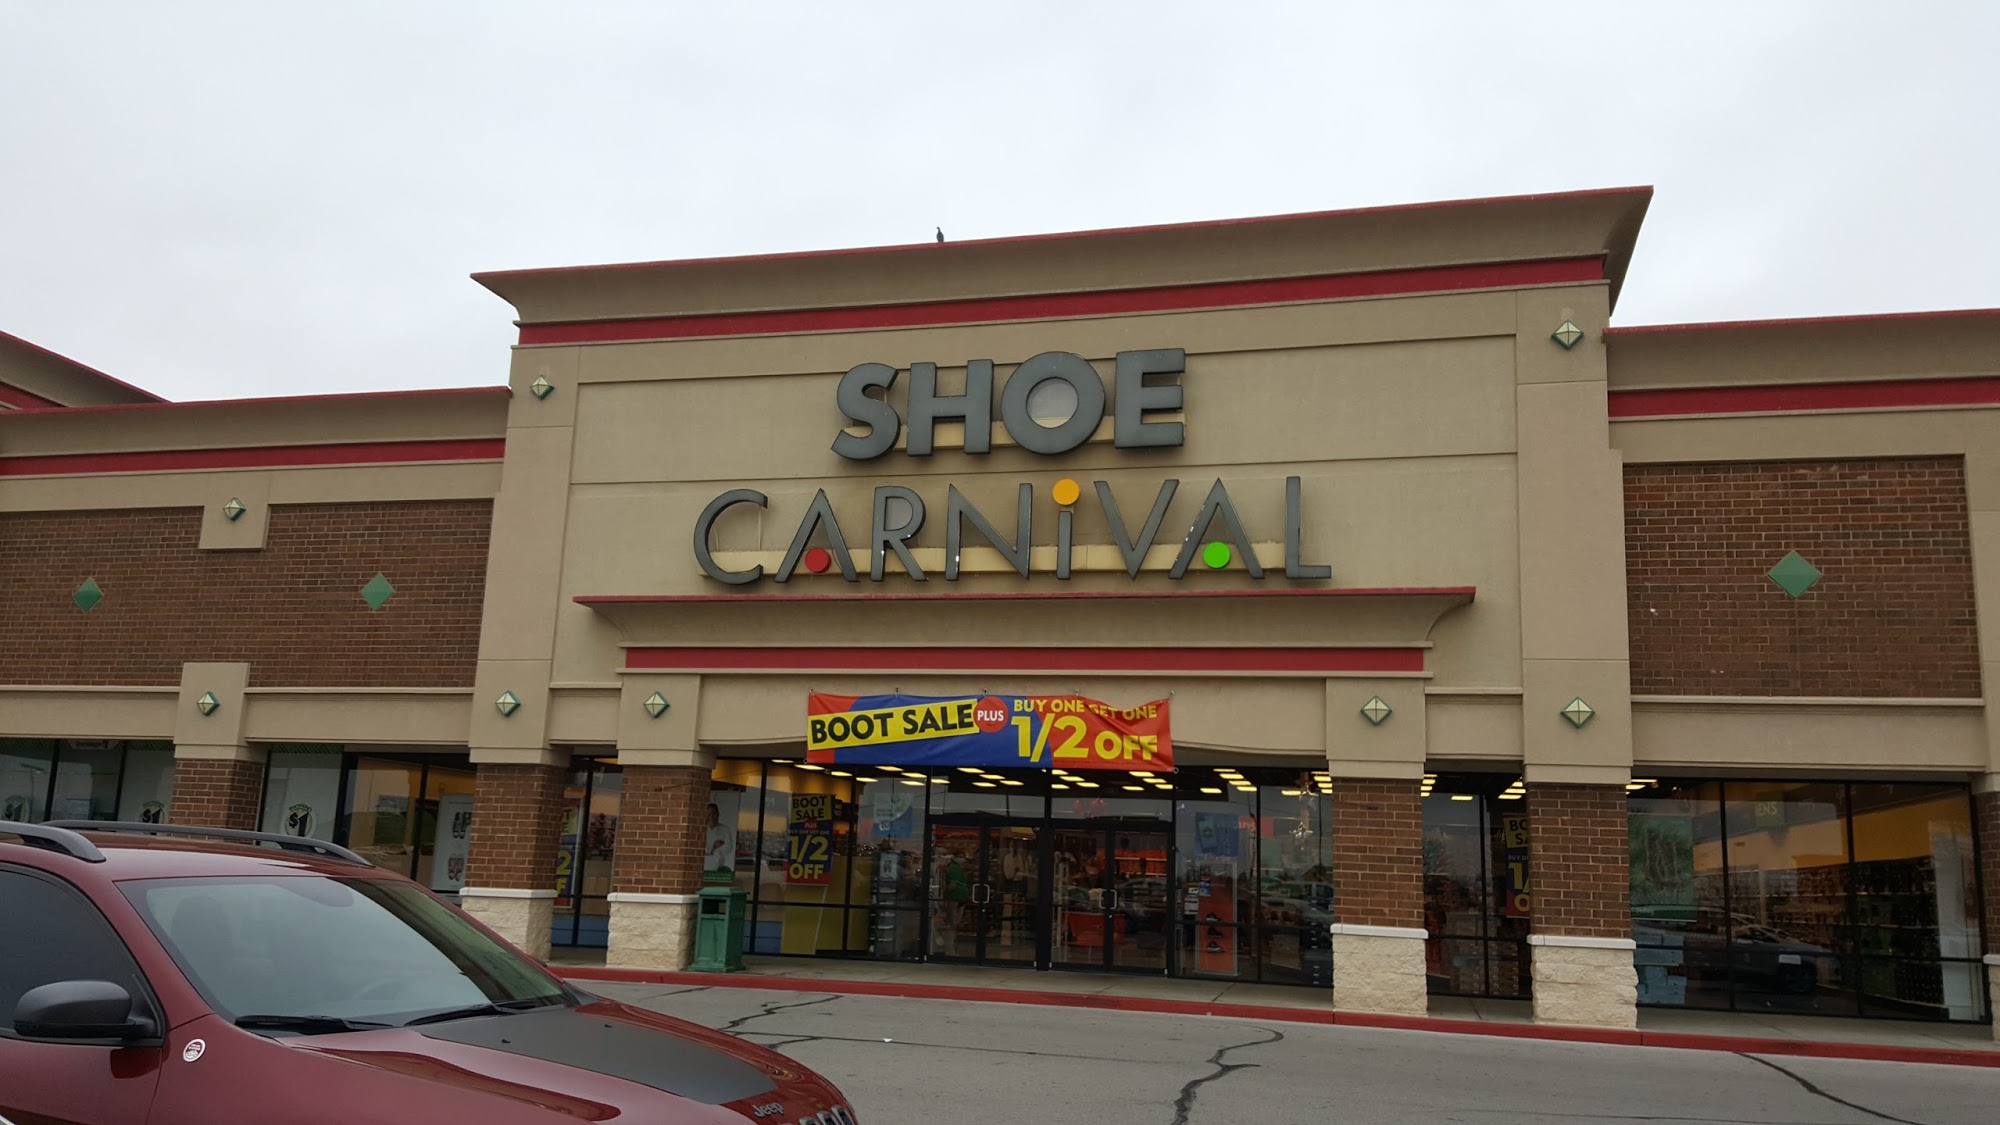 Shoe Carnival